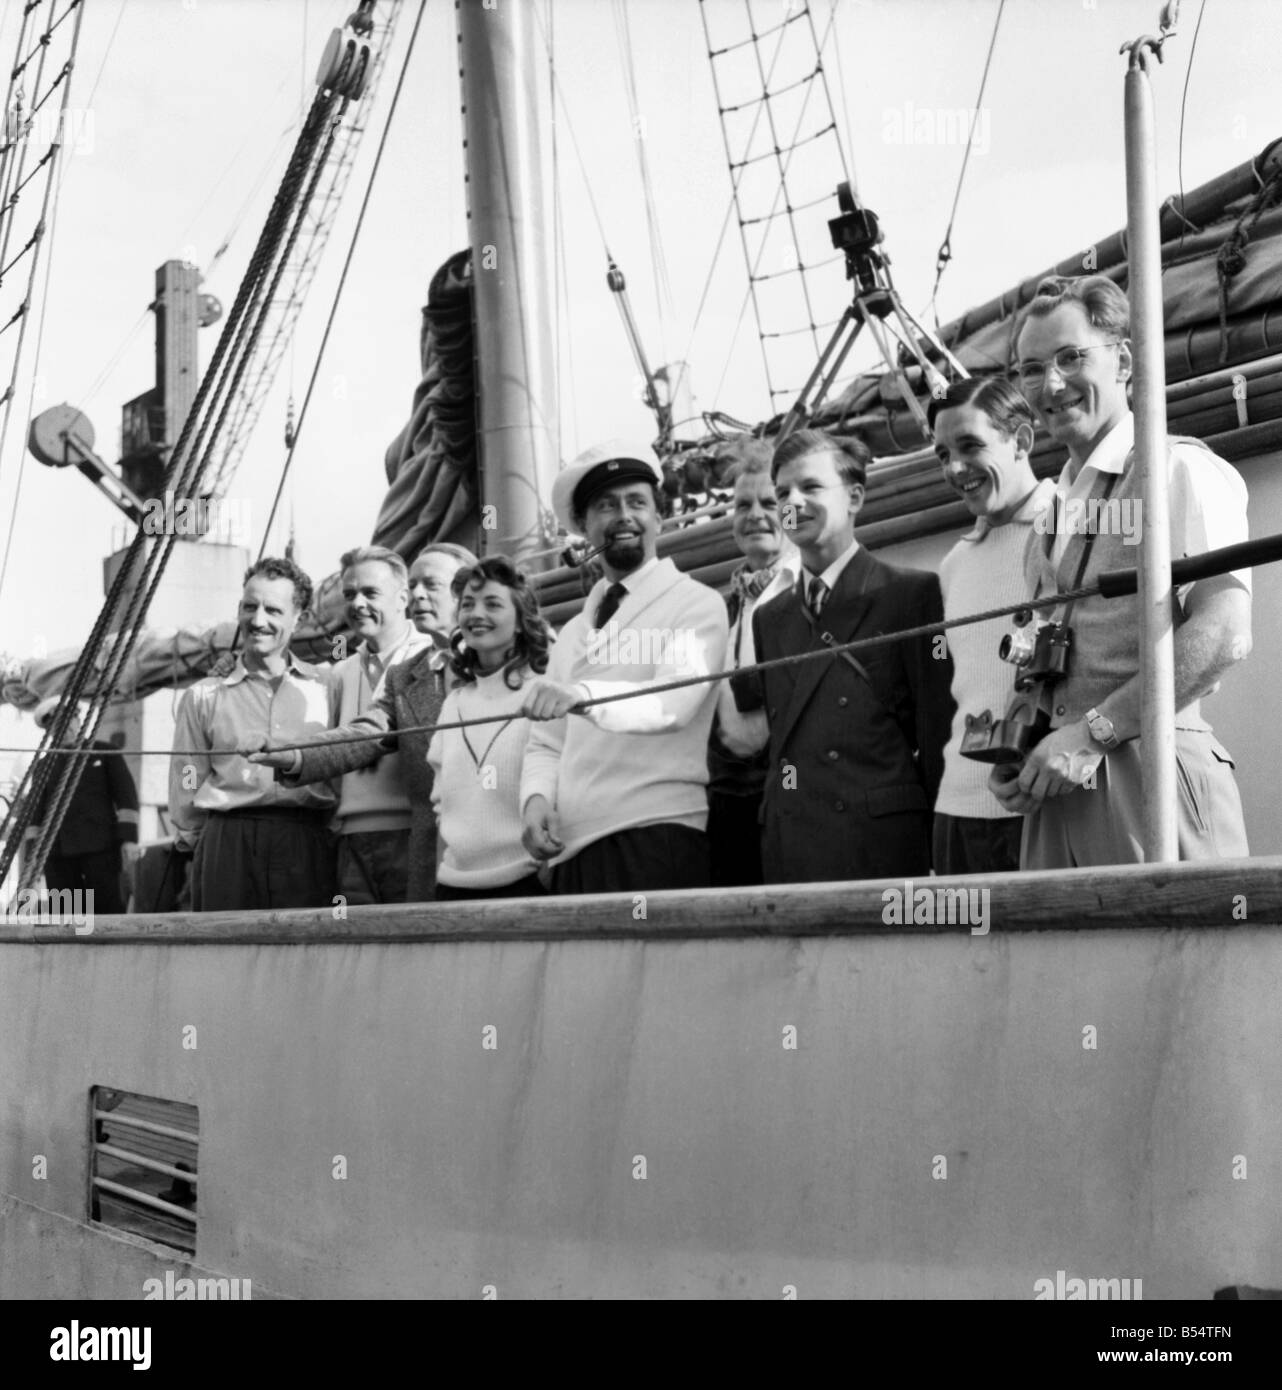 La fille avec le monde du travail de secrétariat ; Lotte est Hass, qui avec son mari Hans Hass, le célèbre photographe de la mer profonde est partir à la découverte de la mer des Caraïbes infestées de requins. Août 1953 D5352-004 Banque D'Images